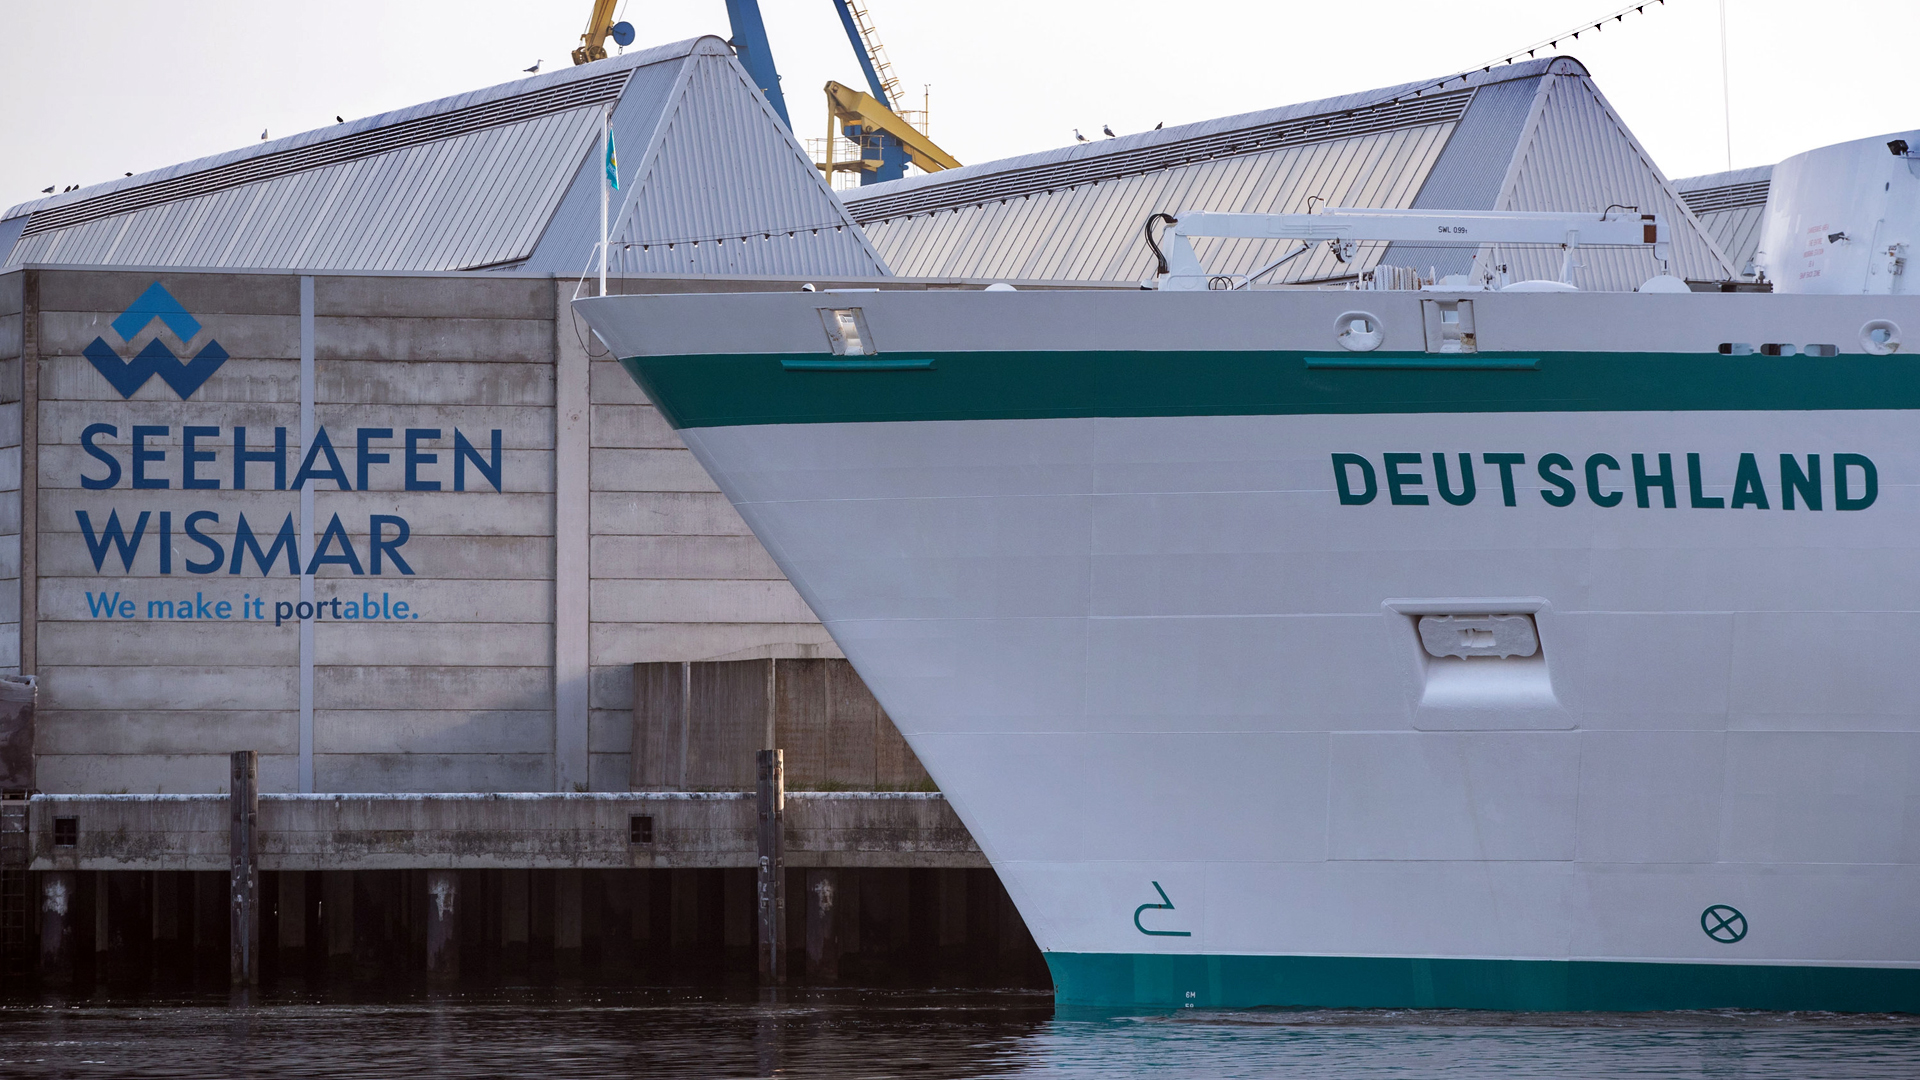 Der Bug des Schiffes "Deutschland" vor einer Hafenmauer in Deutschland.